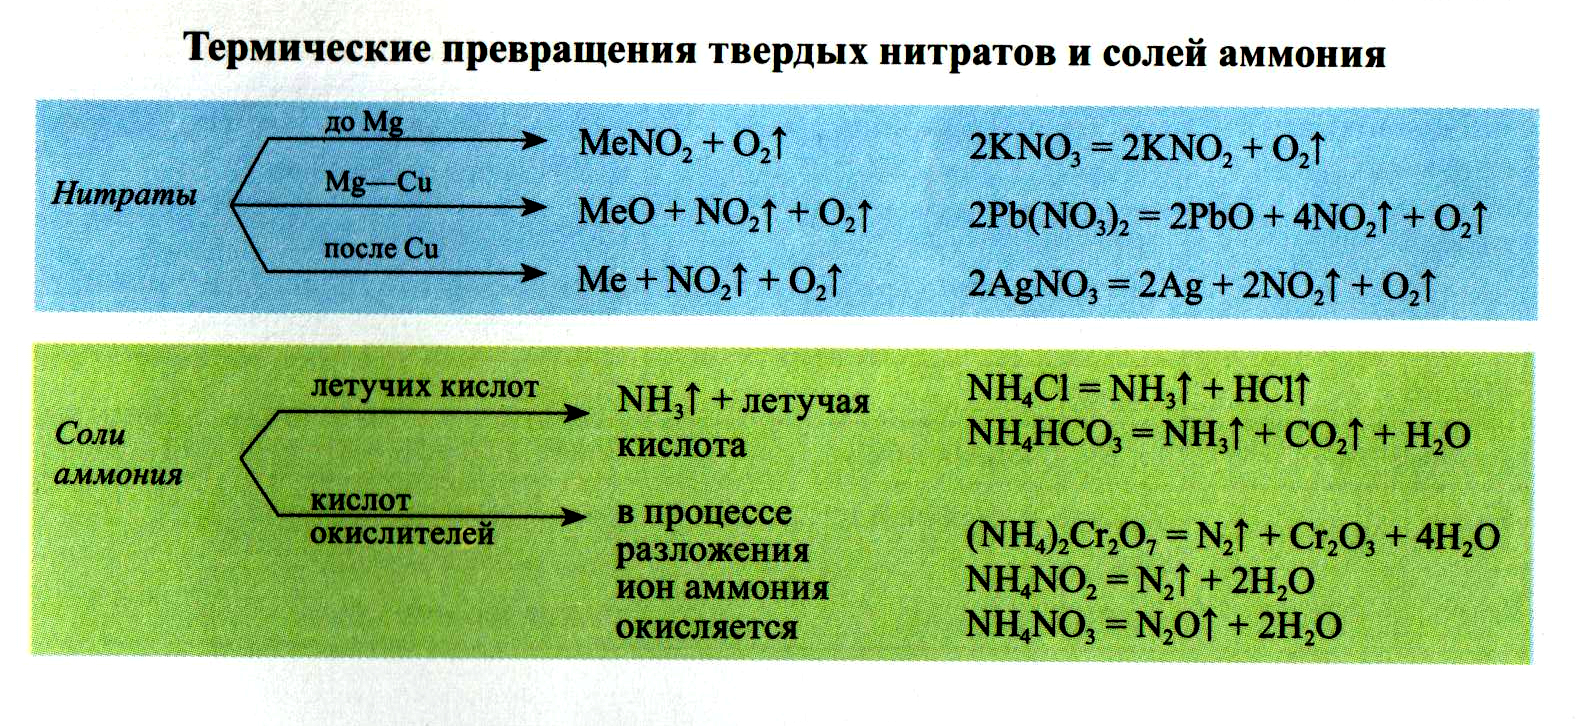 Нитрат свинца формула соли. Нитрат аммония плюс серная кислота. Разложение нитратов схема. Взаимодействие нитратов с кислотами. Разложение солей нитратов при нагревании.